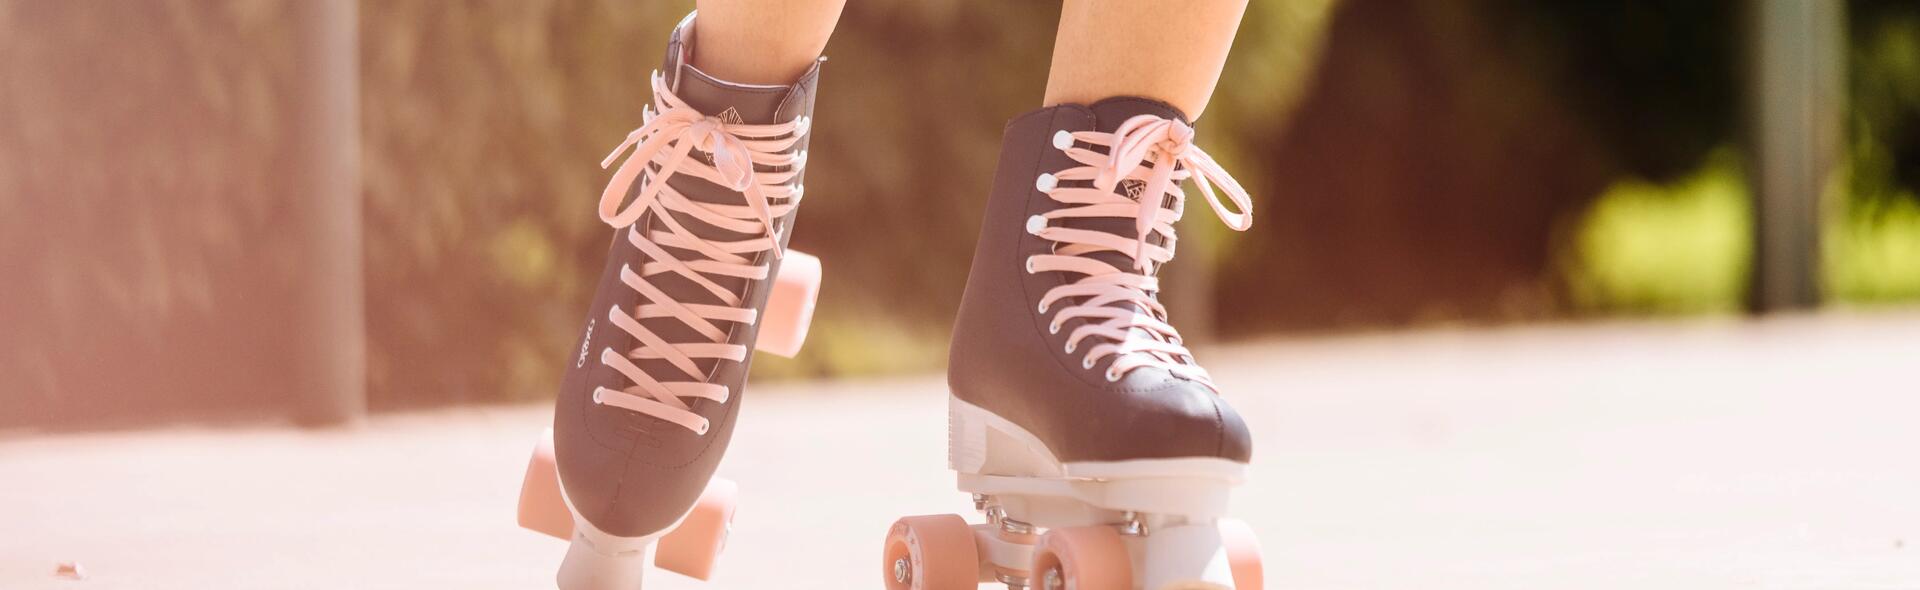 Quels patins à roulettes choisir ?